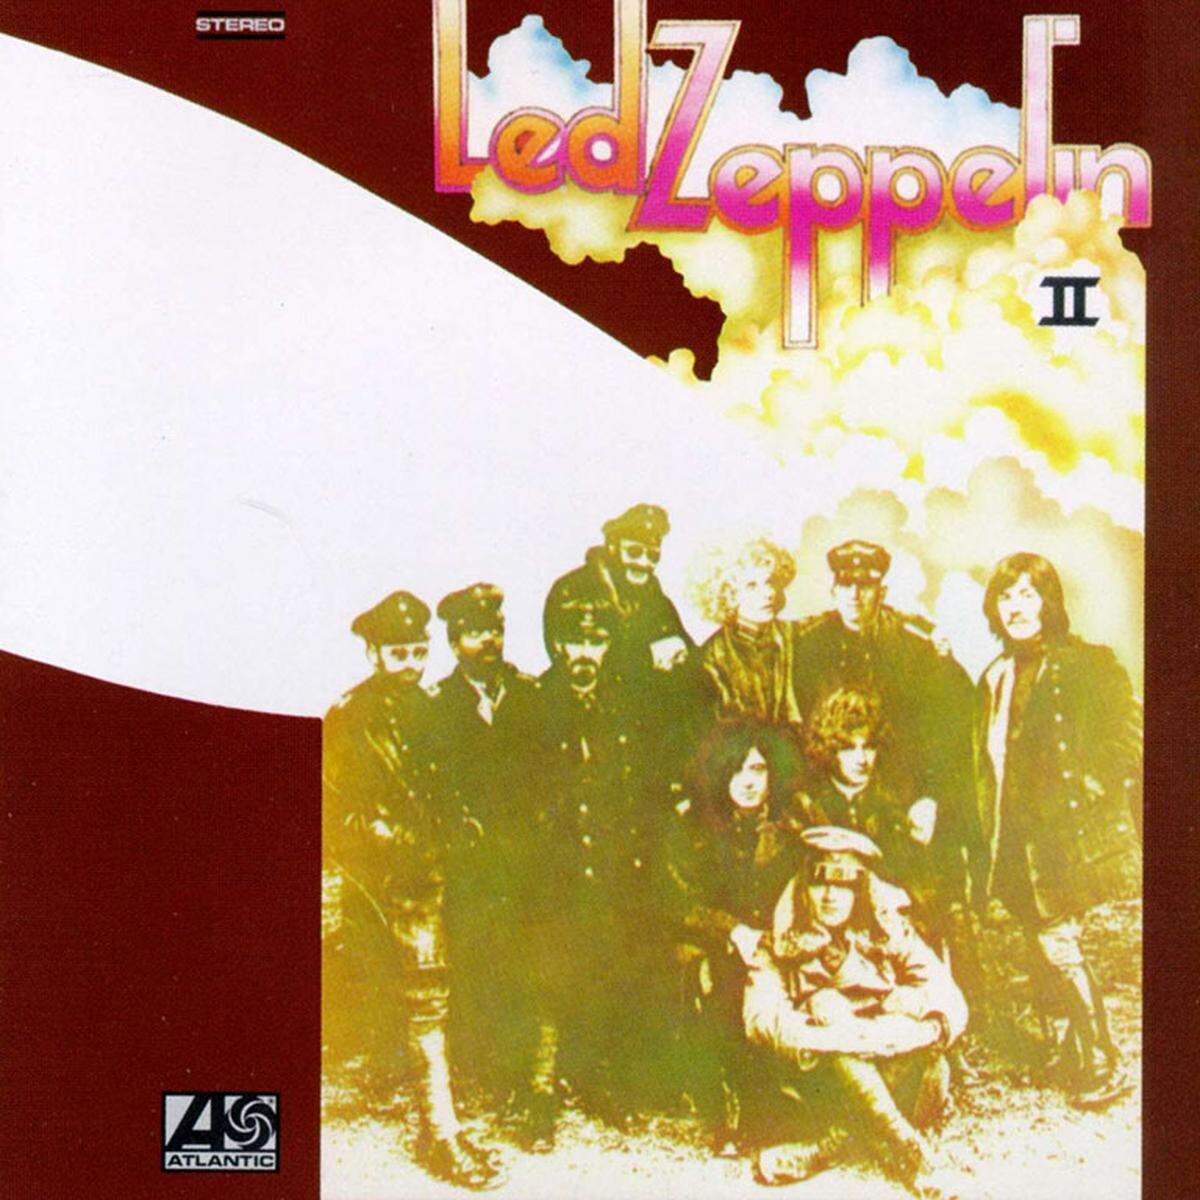 Das zweite Album von Led Zeppelin - "Led Zeppelin II" - läutete 1969 eine neue Rock-Ära ein, die von Protagonisten wie Aerosmith oder Iron Maiden fortgeführt wurde.